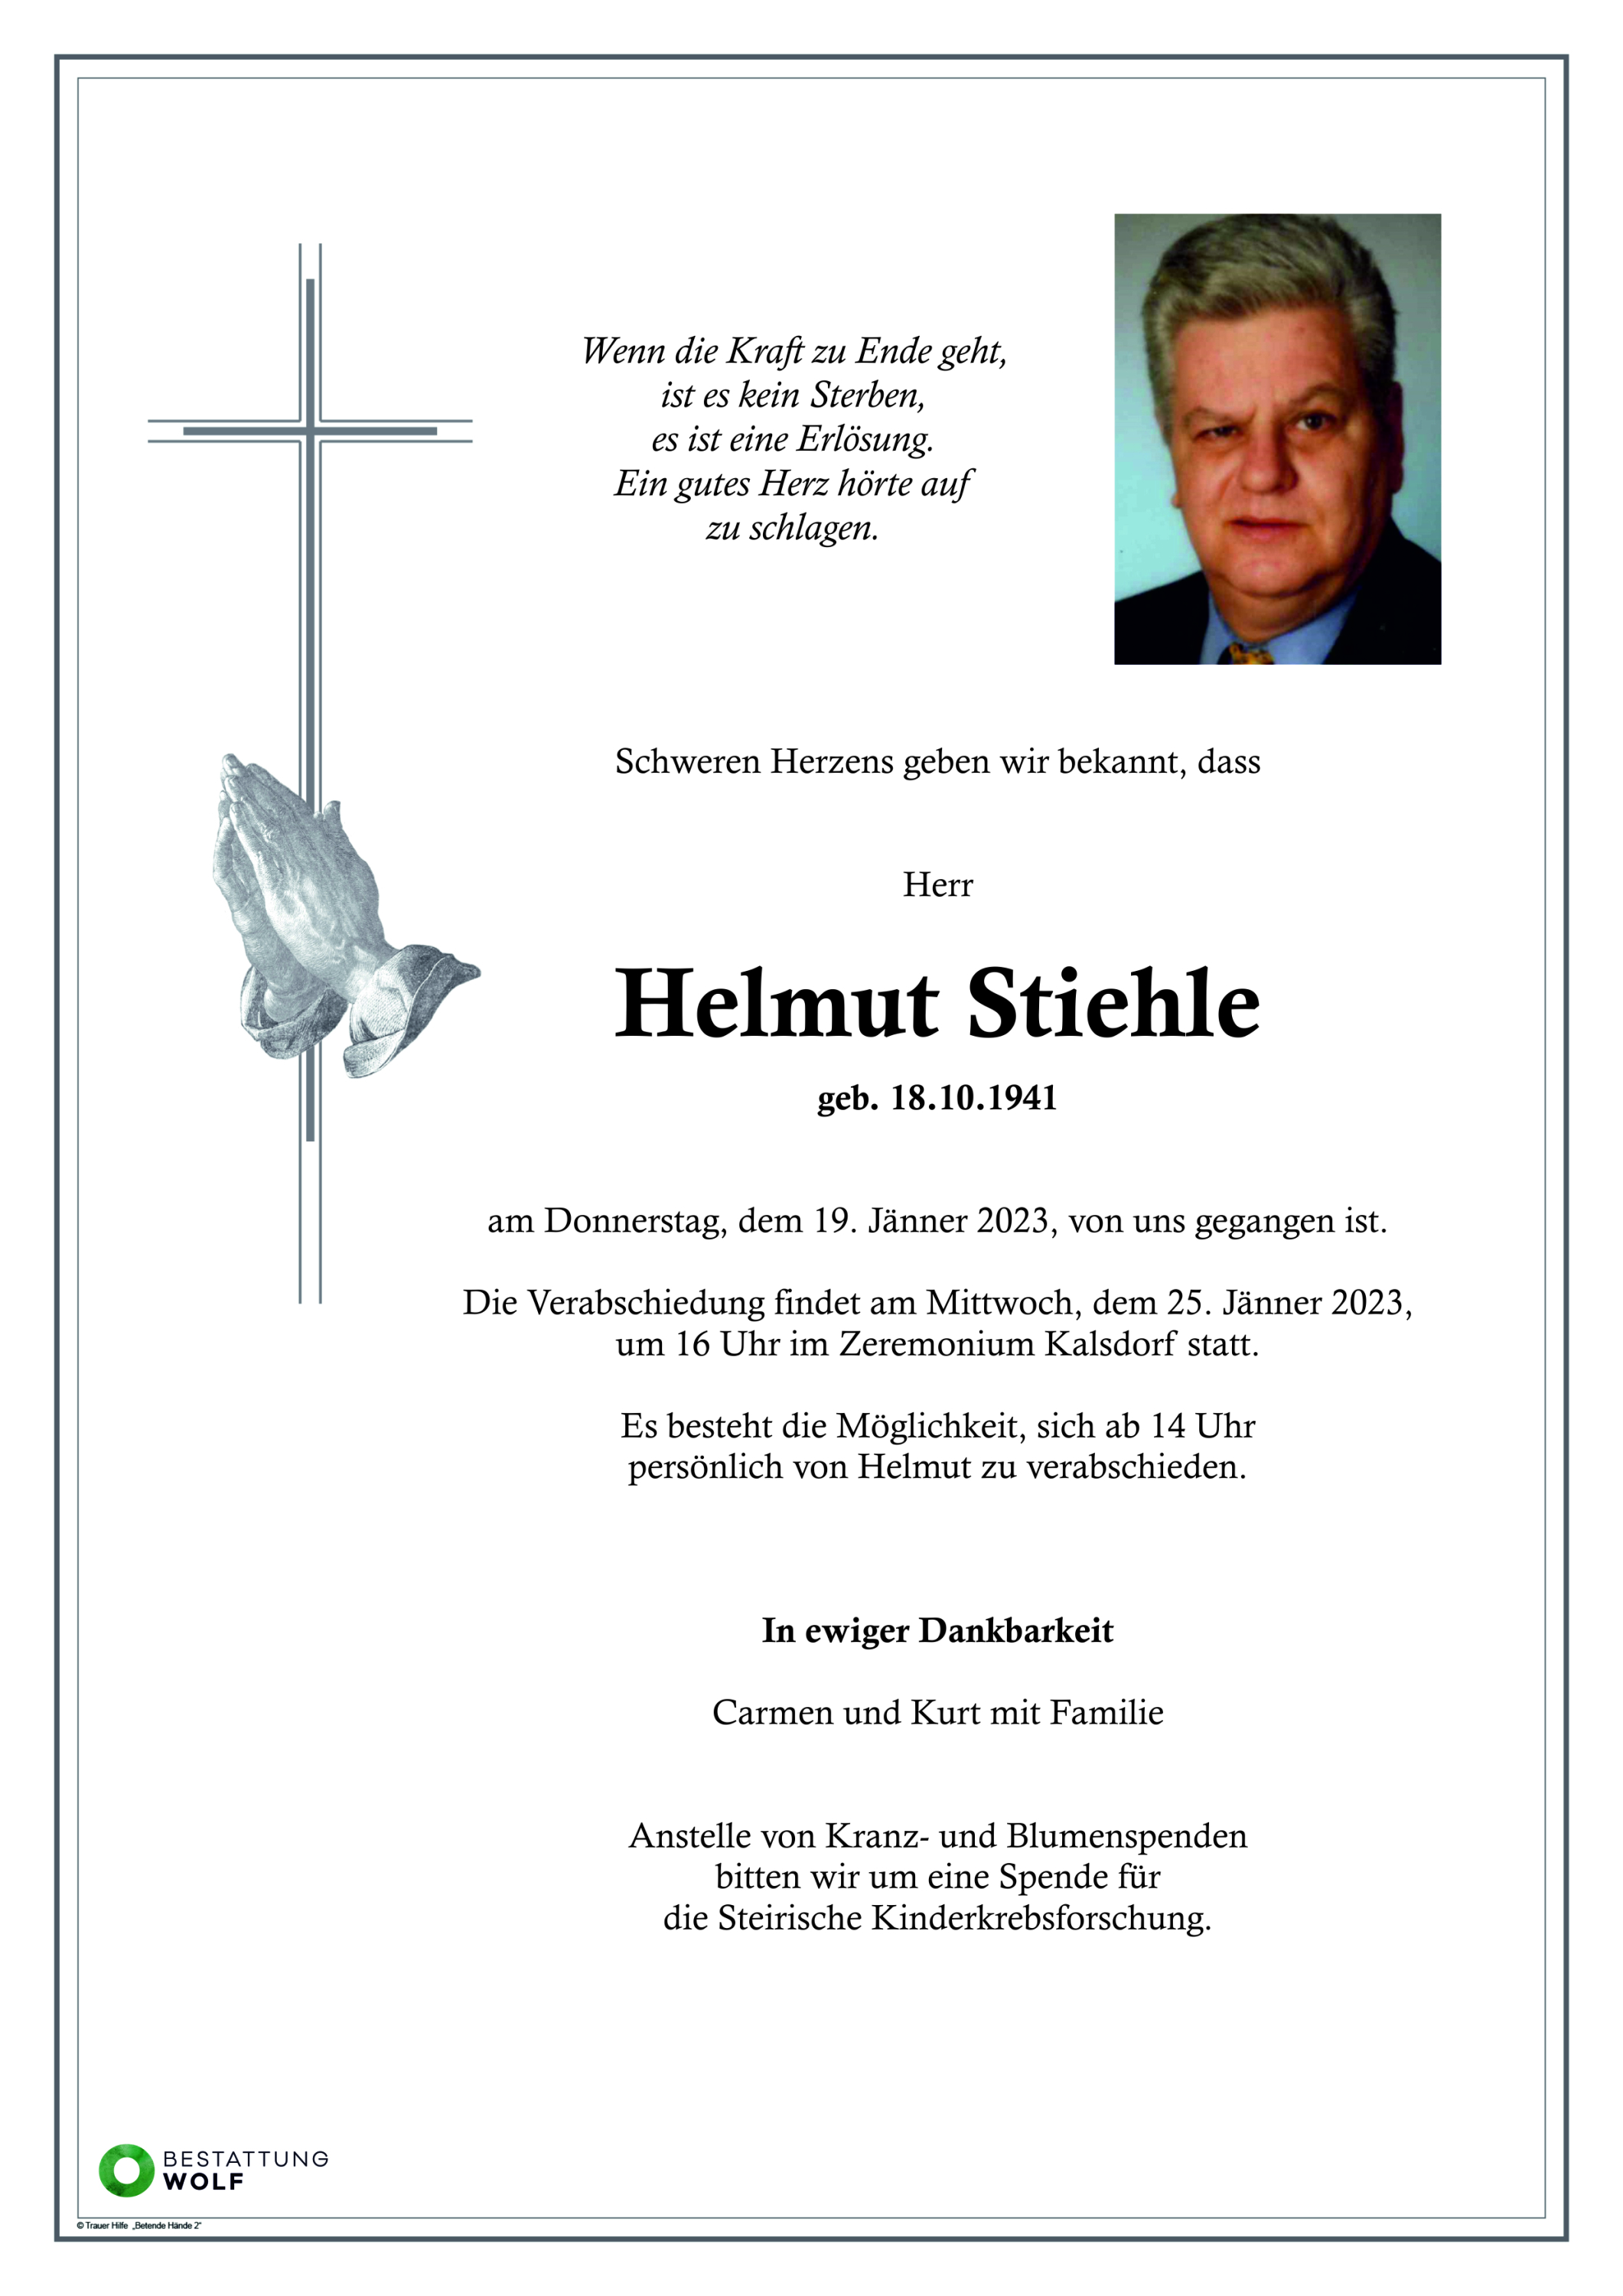 Helmut Stiehle